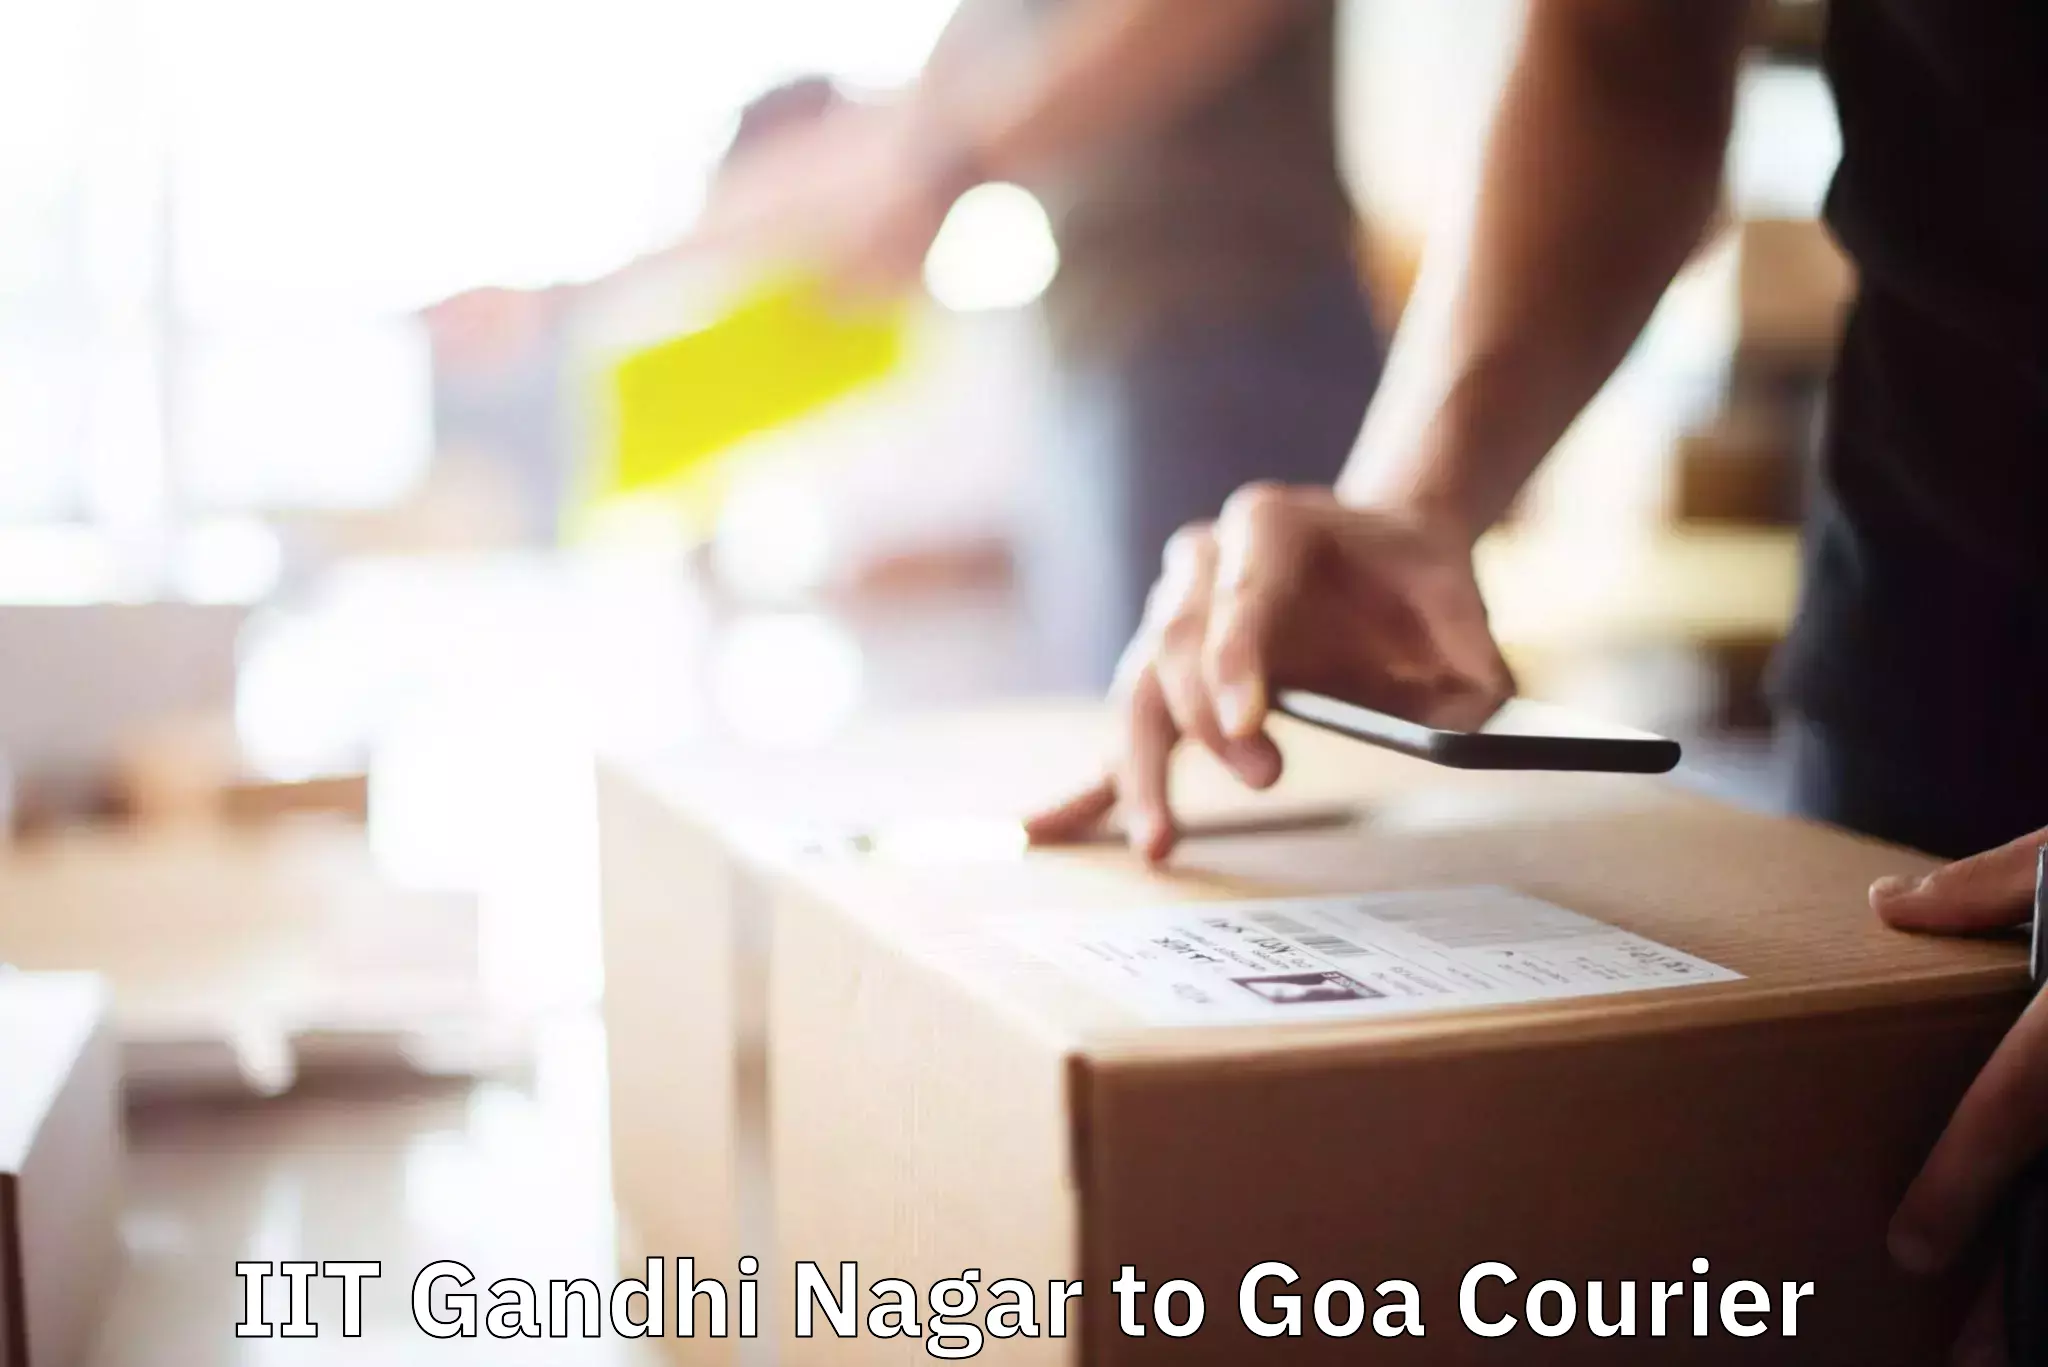 Furniture moving service IIT Gandhi Nagar to NIT Goa